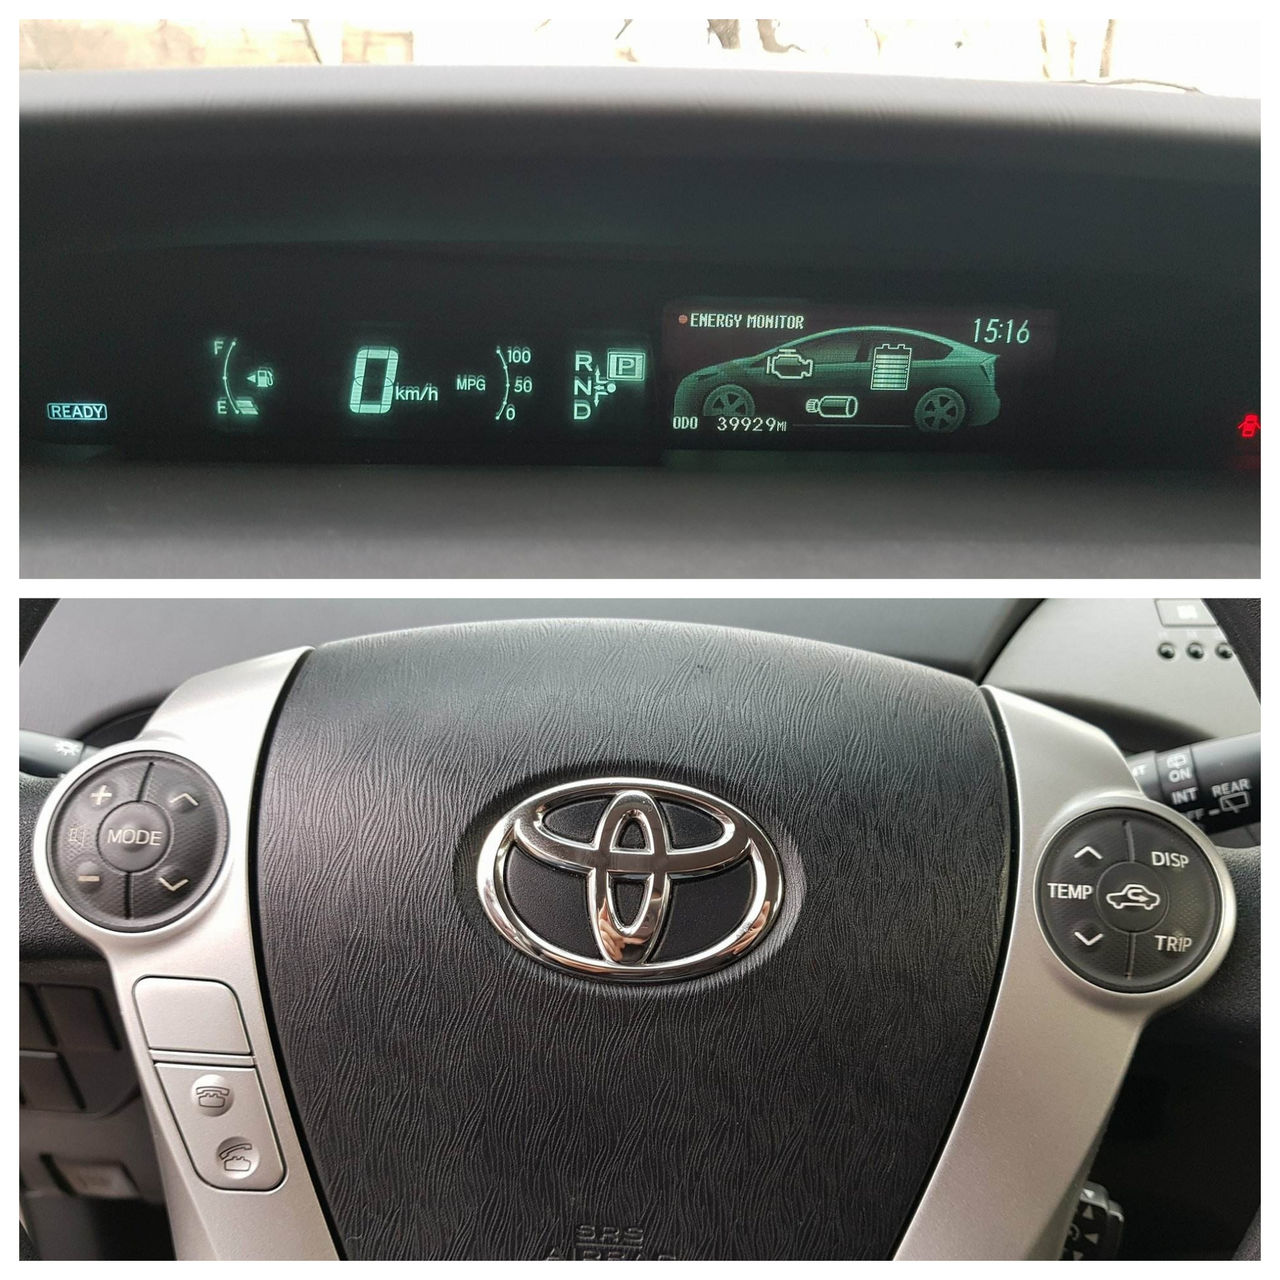 Toyota Prius - Car for Rent Chisinau, Moldova2